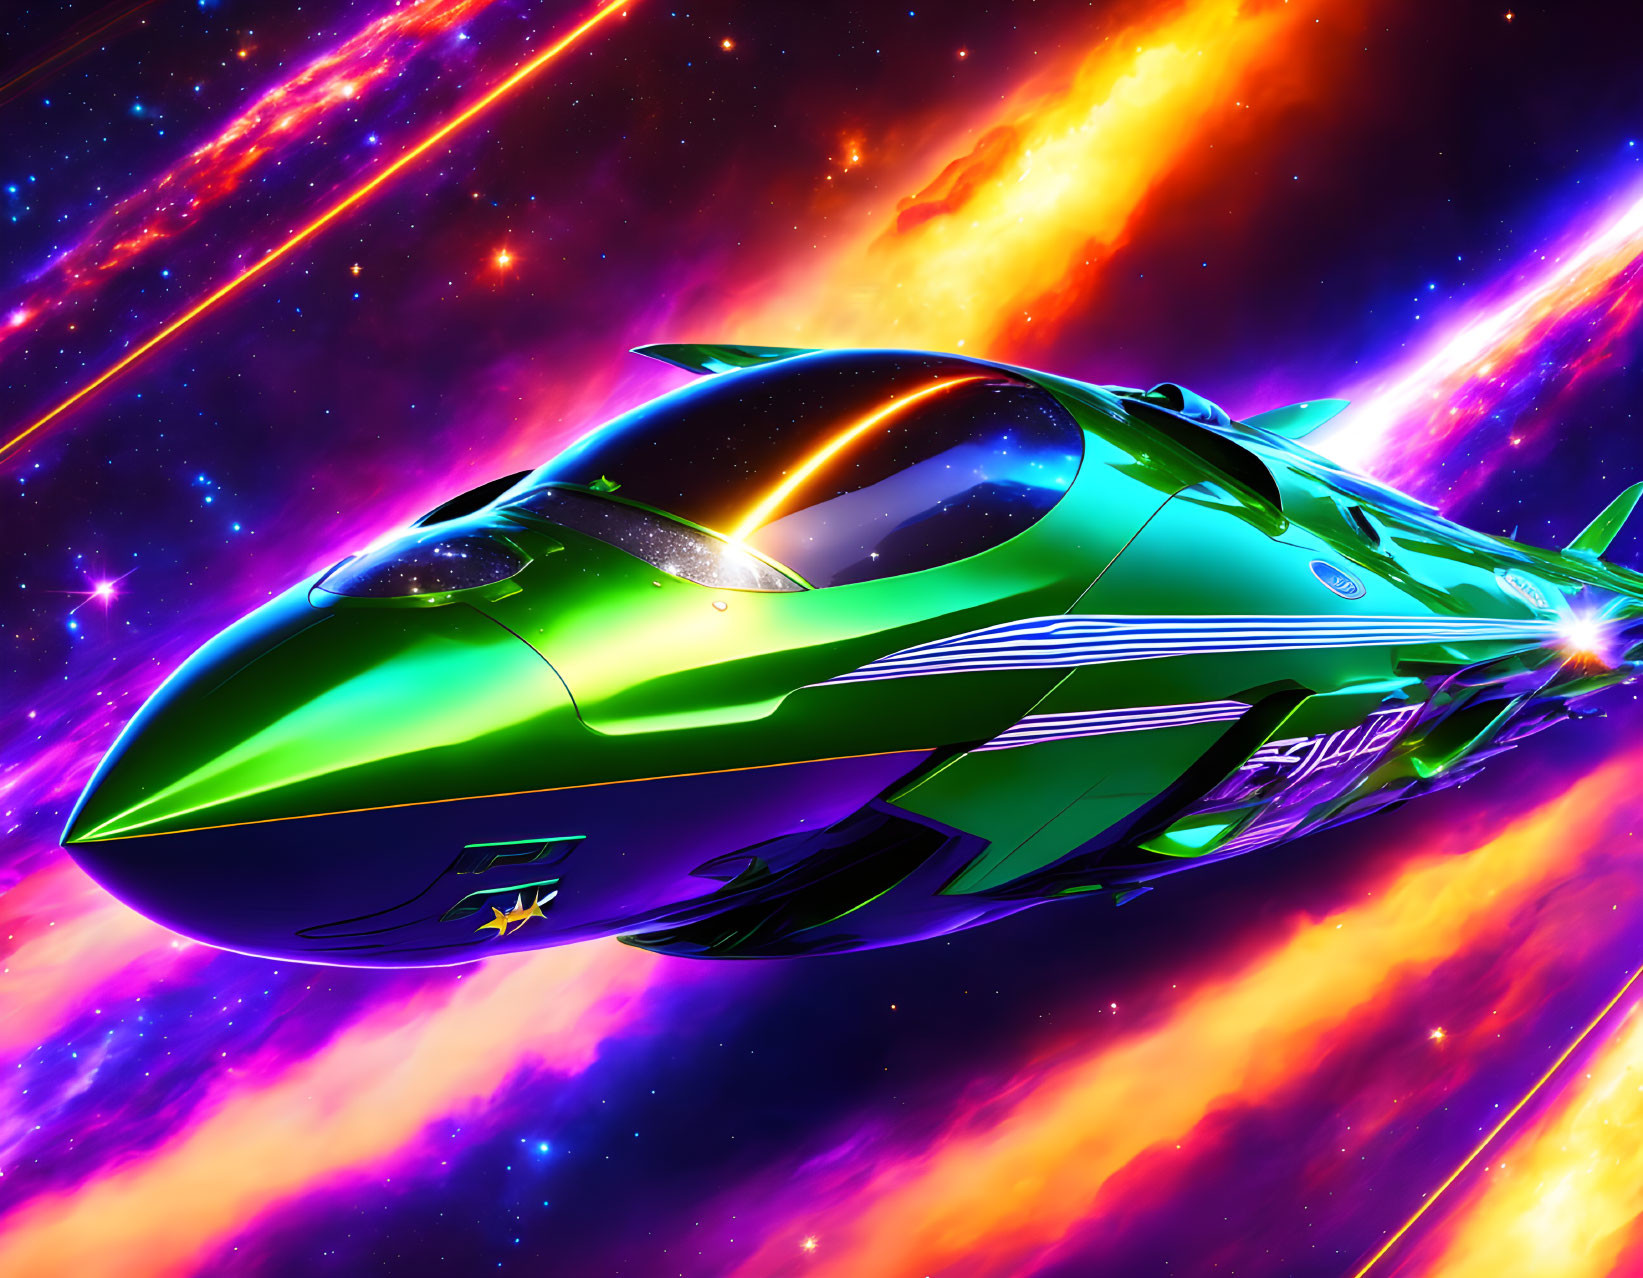 Space super emerald star jet